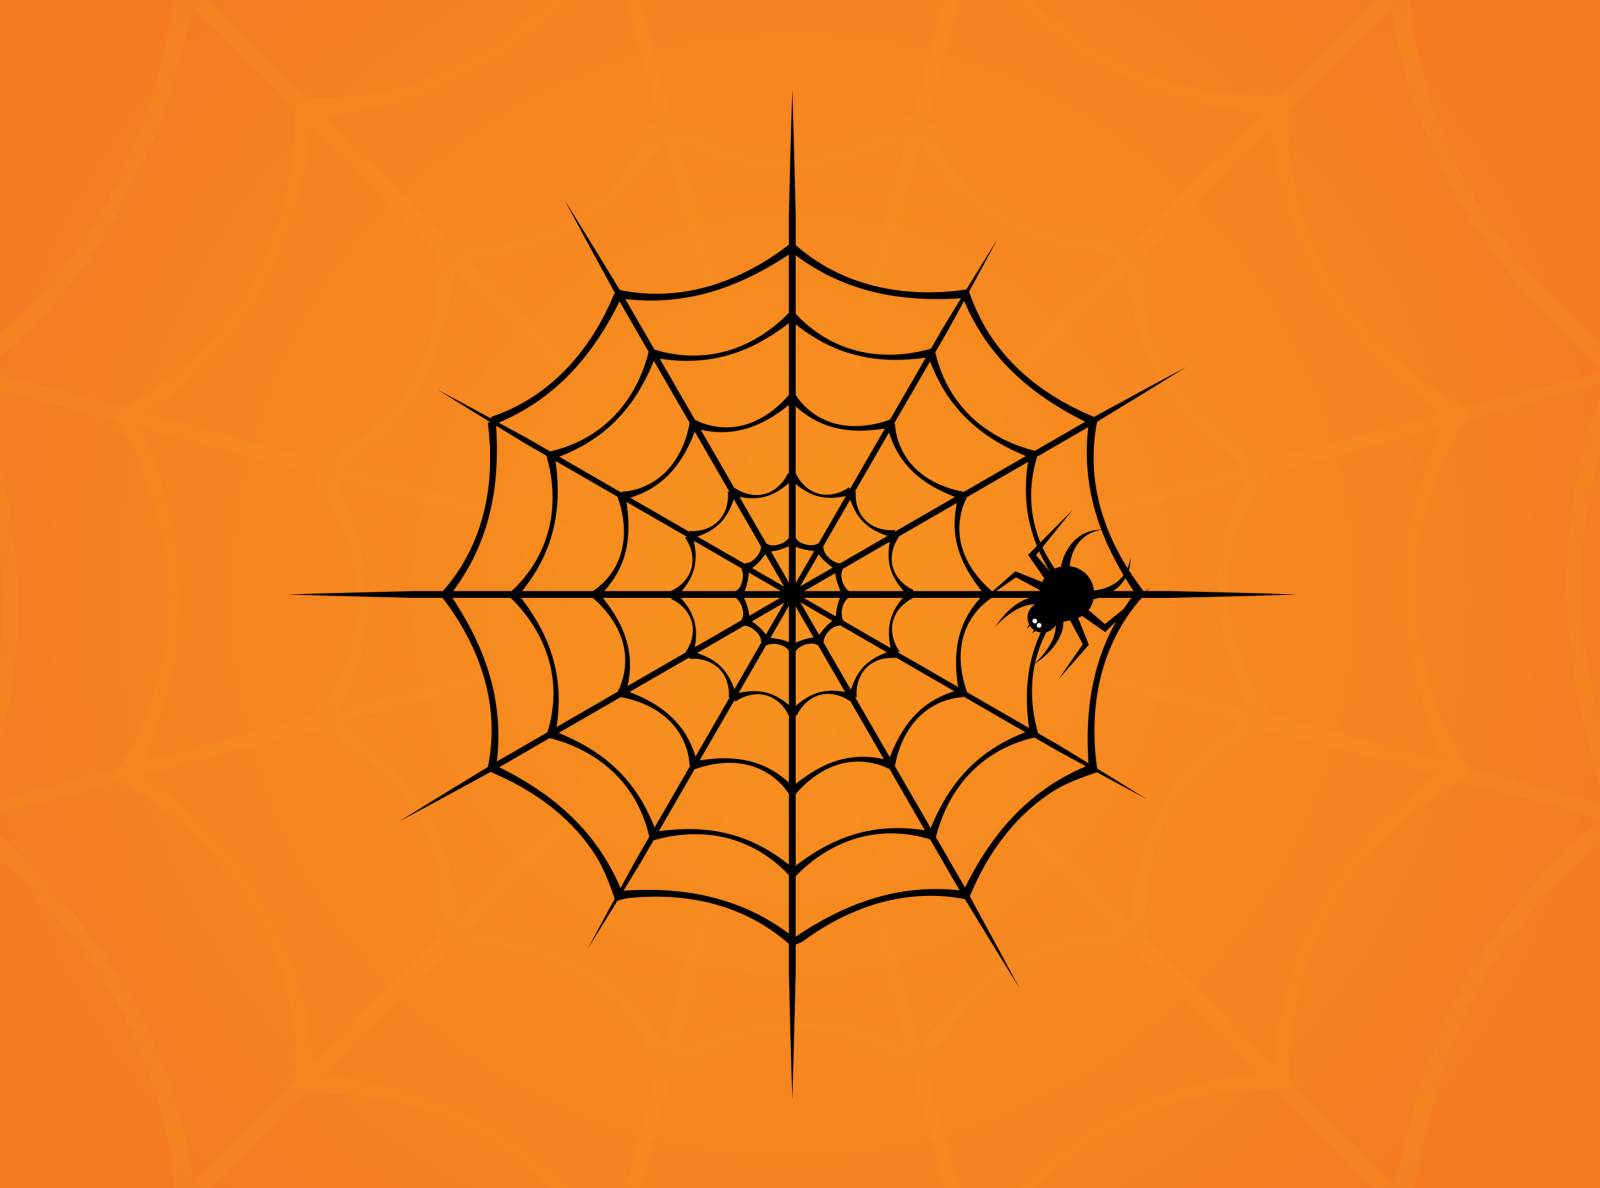 8. Halloween Nail Art Tutorial: 3D Rhinestone Spiderweb Design - wide 5